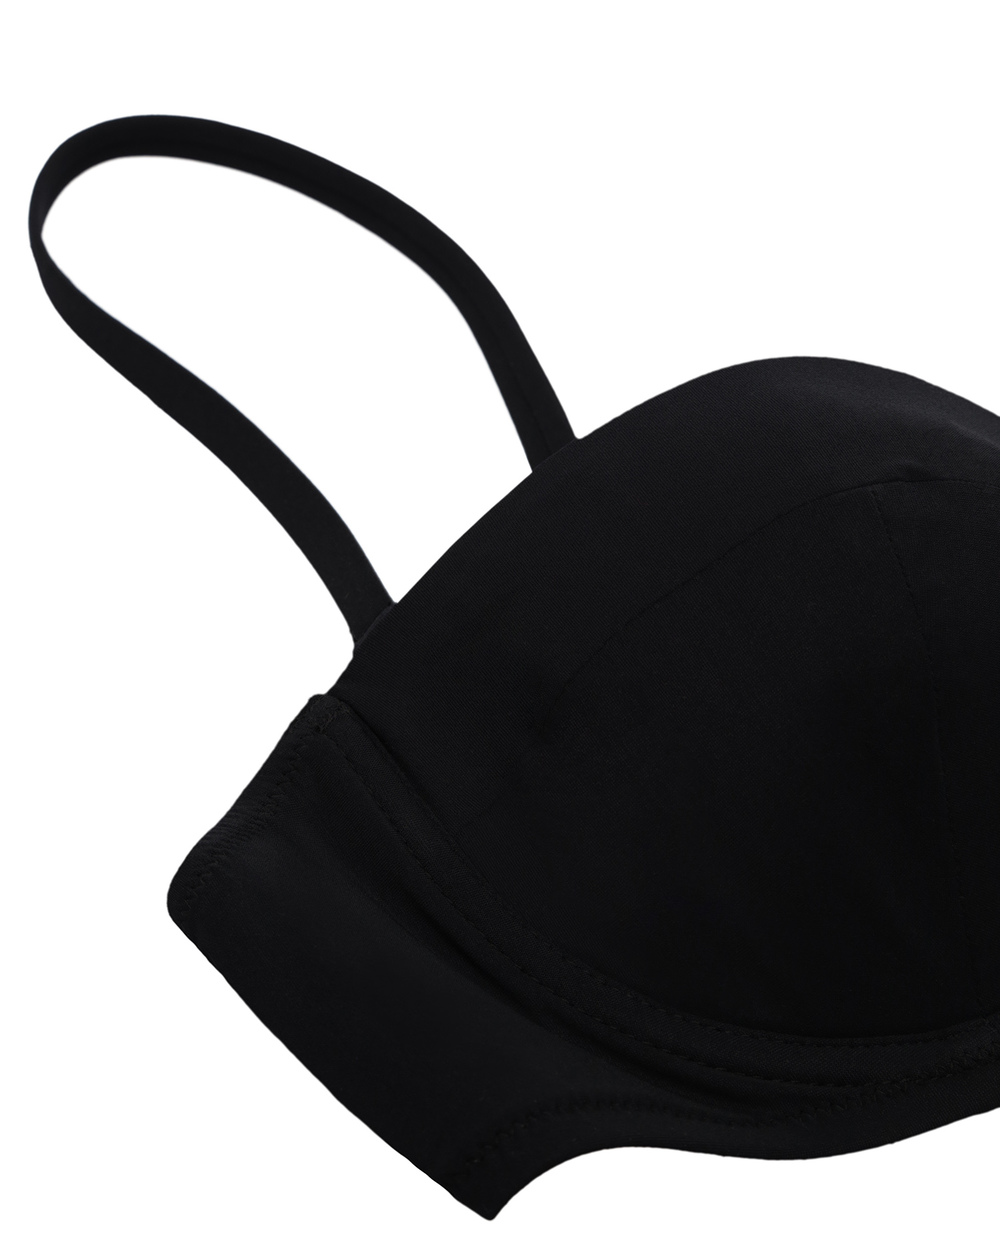 Лиф от купальника Dolce&Gabbana O1A16J-FUGA2, черный цвет • Купить в интернет-магазине Kameron